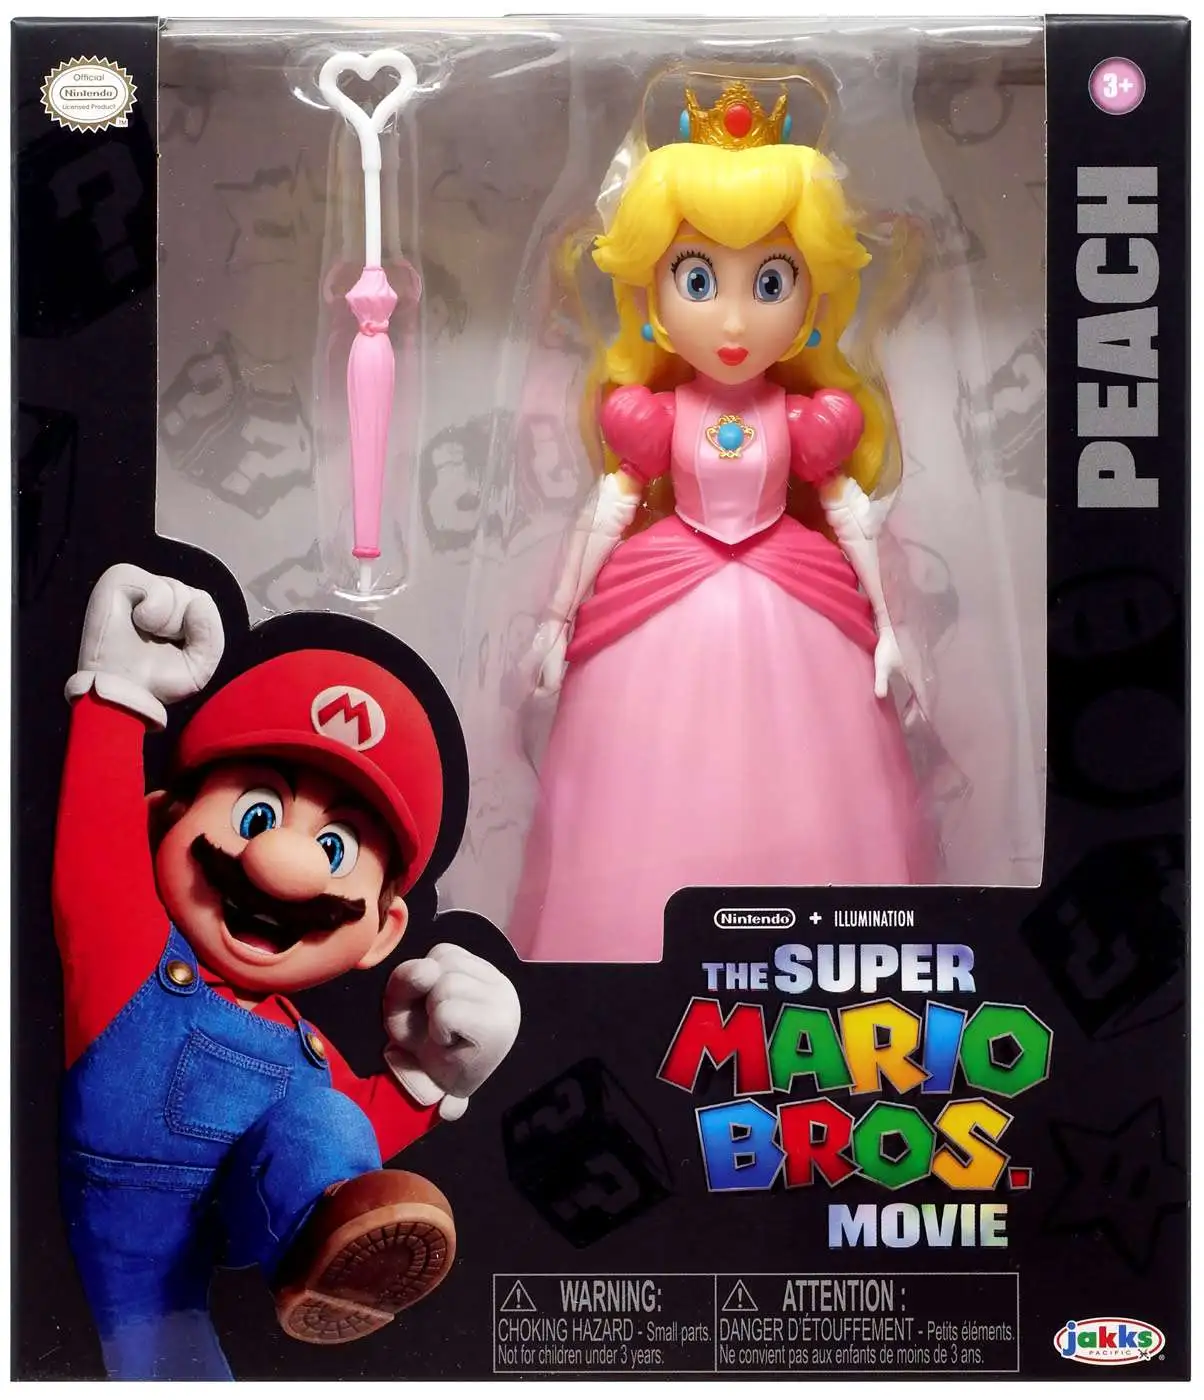 Super Mario Play Set - 3-Pack - CAT Mario/Luigi/Peach